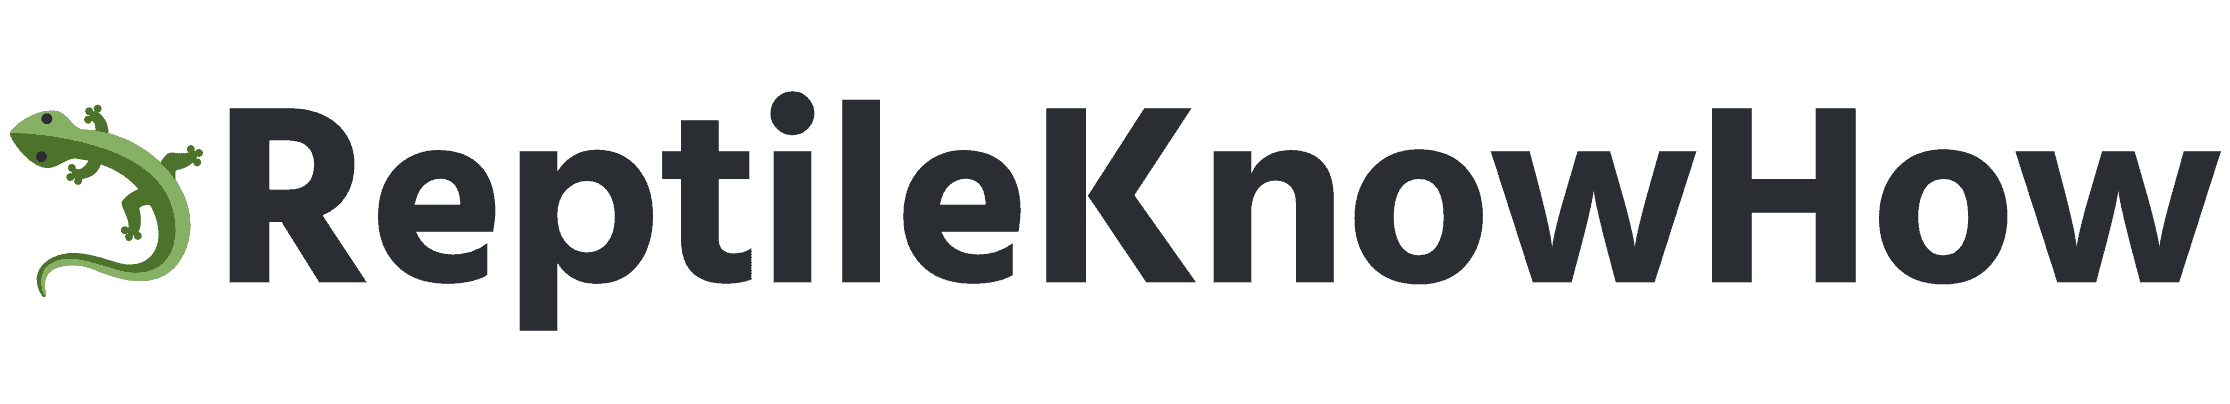 ReptileKnowHow logo